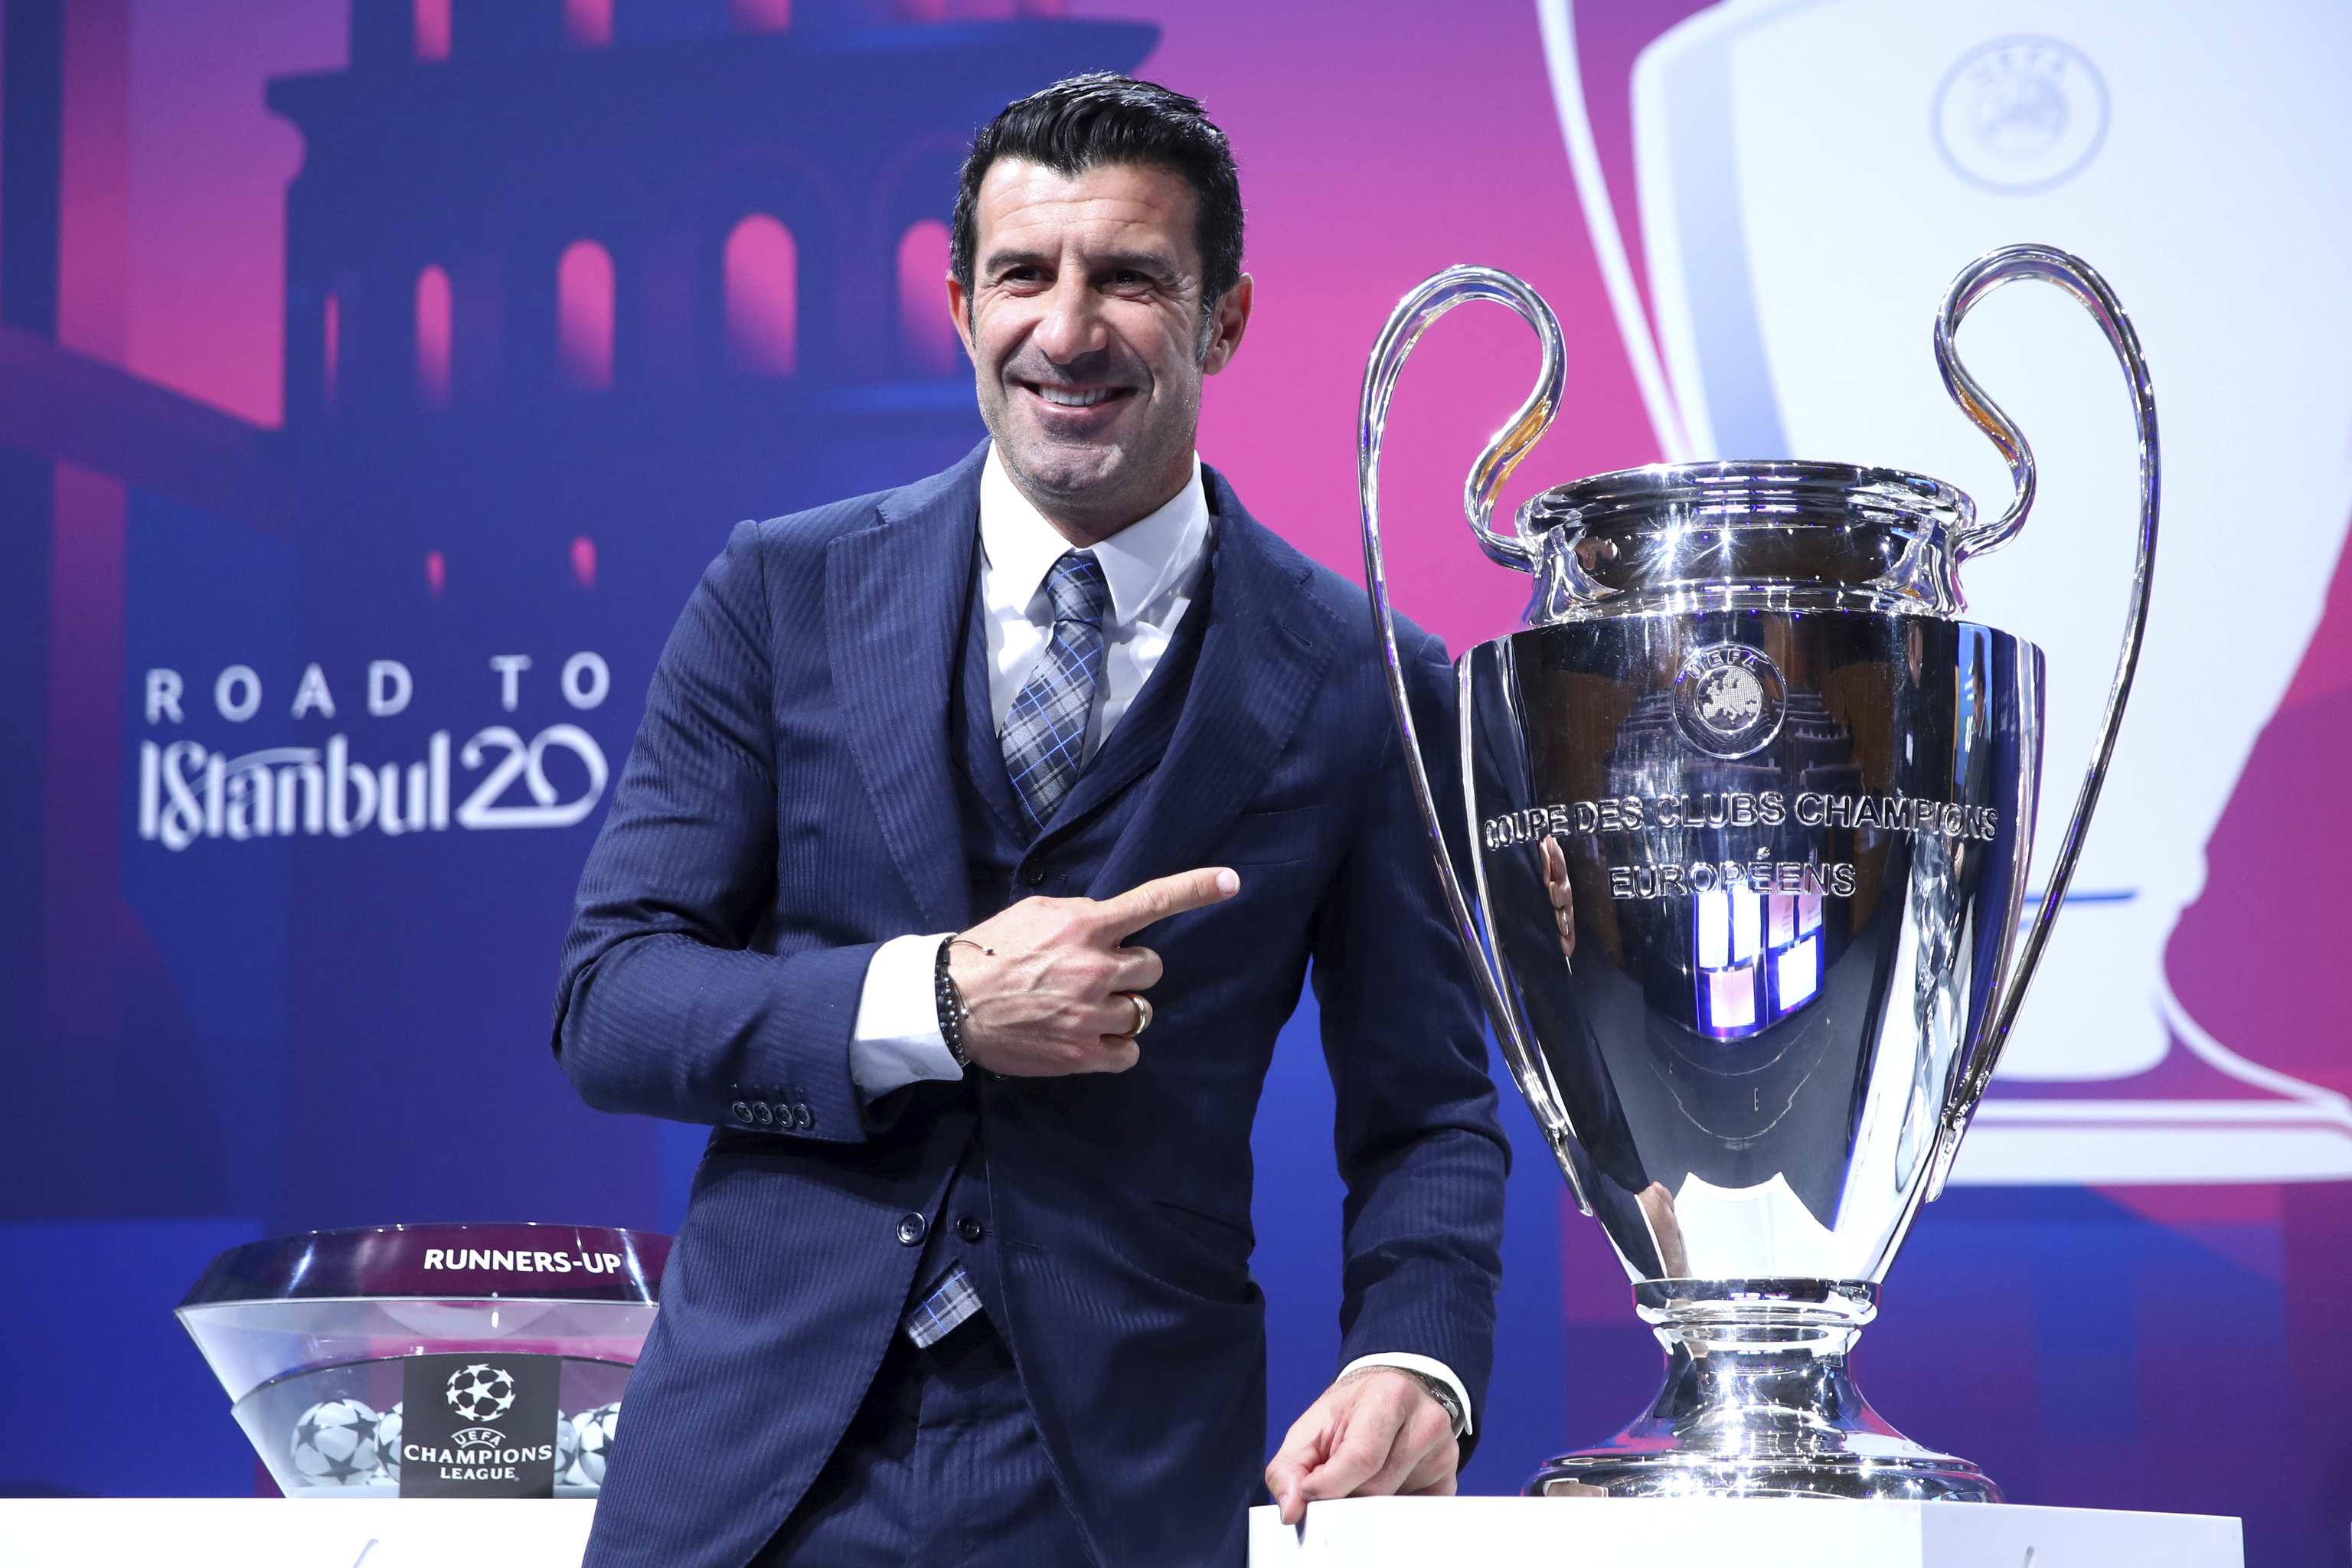 Champions: y dónde en directo la del sorteo de la Champions | Champions League 2021 - 2022